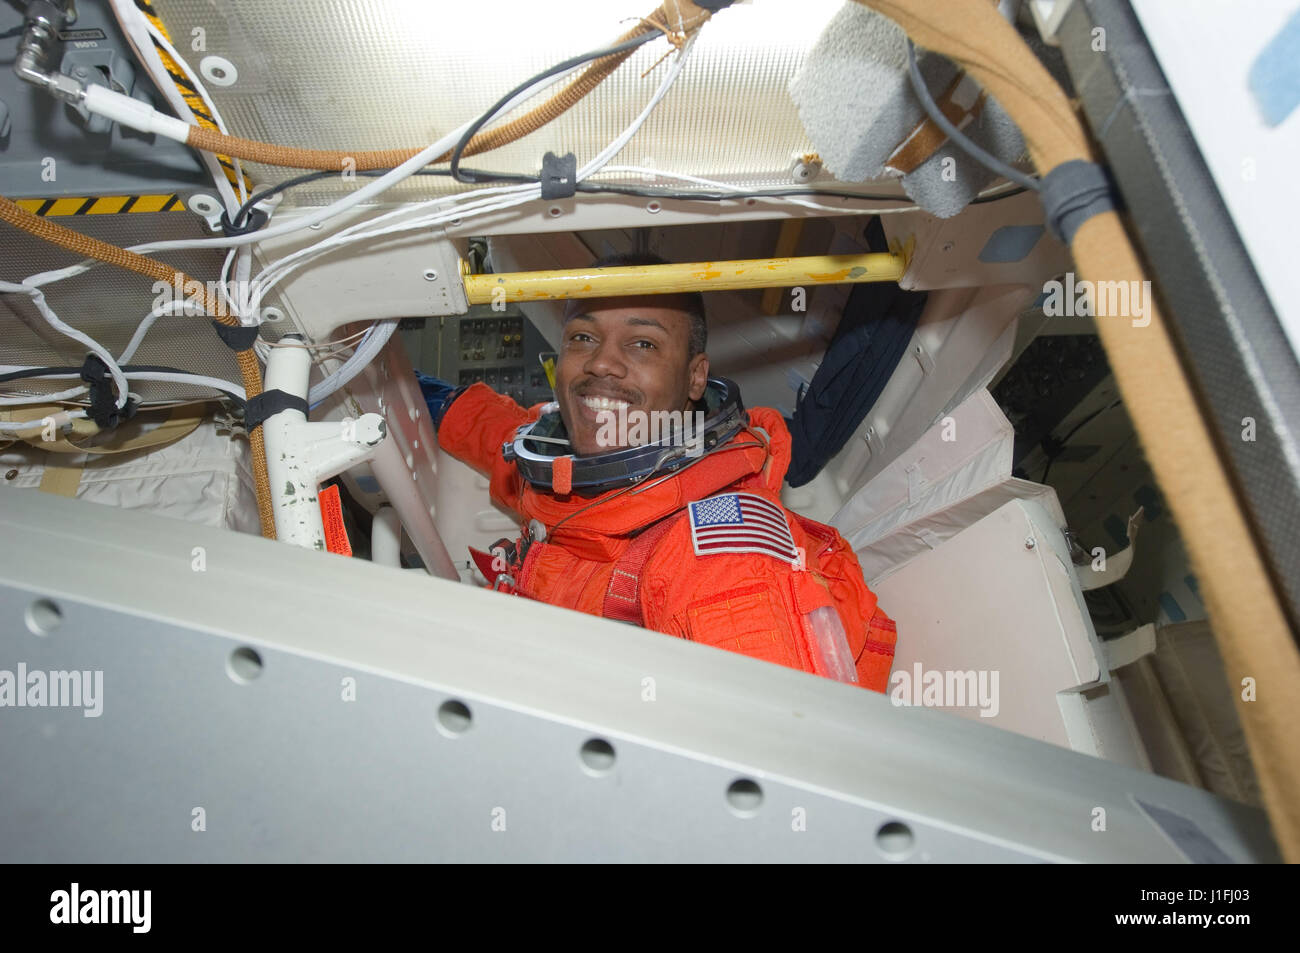 La NASA Stazione Spaziale Internazionale STS-133 missione il primo equipaggio astronauta Alvin Drew indossa il suo lancio arancione e voce tuta spaziale di atterraggio a bordo della navetta spaziale Discovery middeck prima dello sbarco il 9 marzo 2011 in orbita intorno alla terra. (Foto di Foto NASA /NASA via Planetpix) Foto Stock